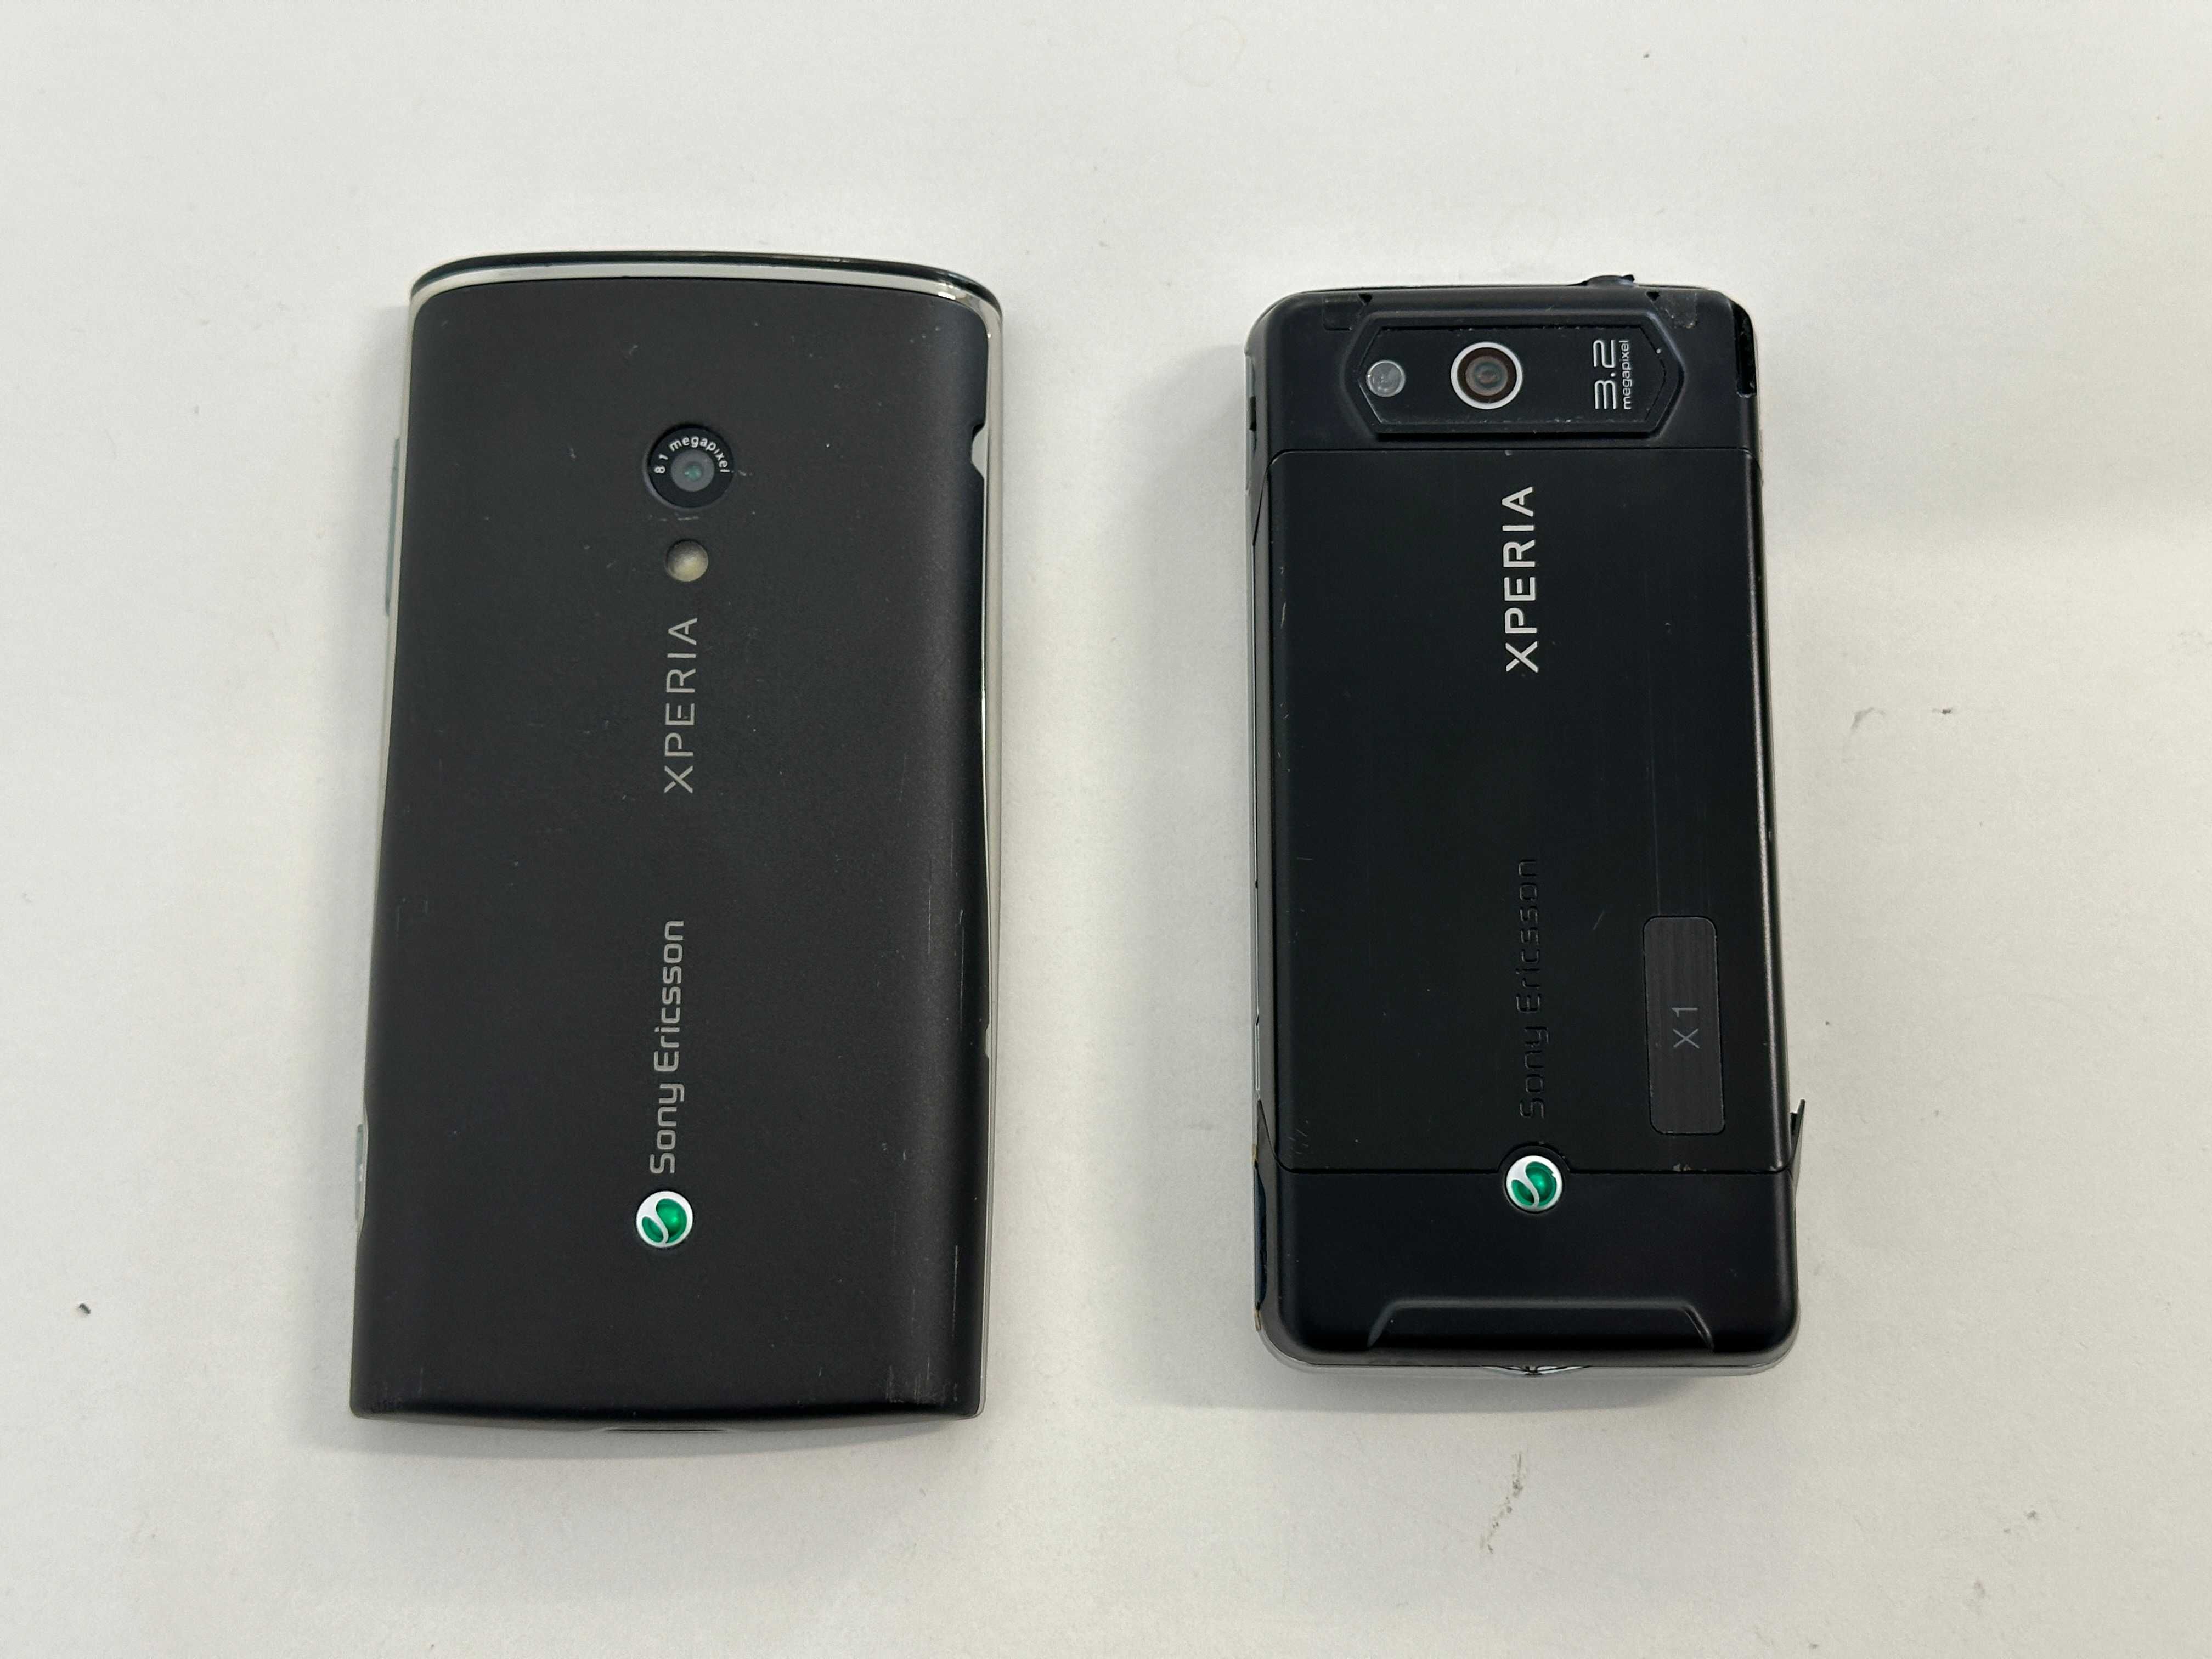 2x Sony Ericsson - Xperia X1 oraz X10 dla kolekcjonera, WARTO